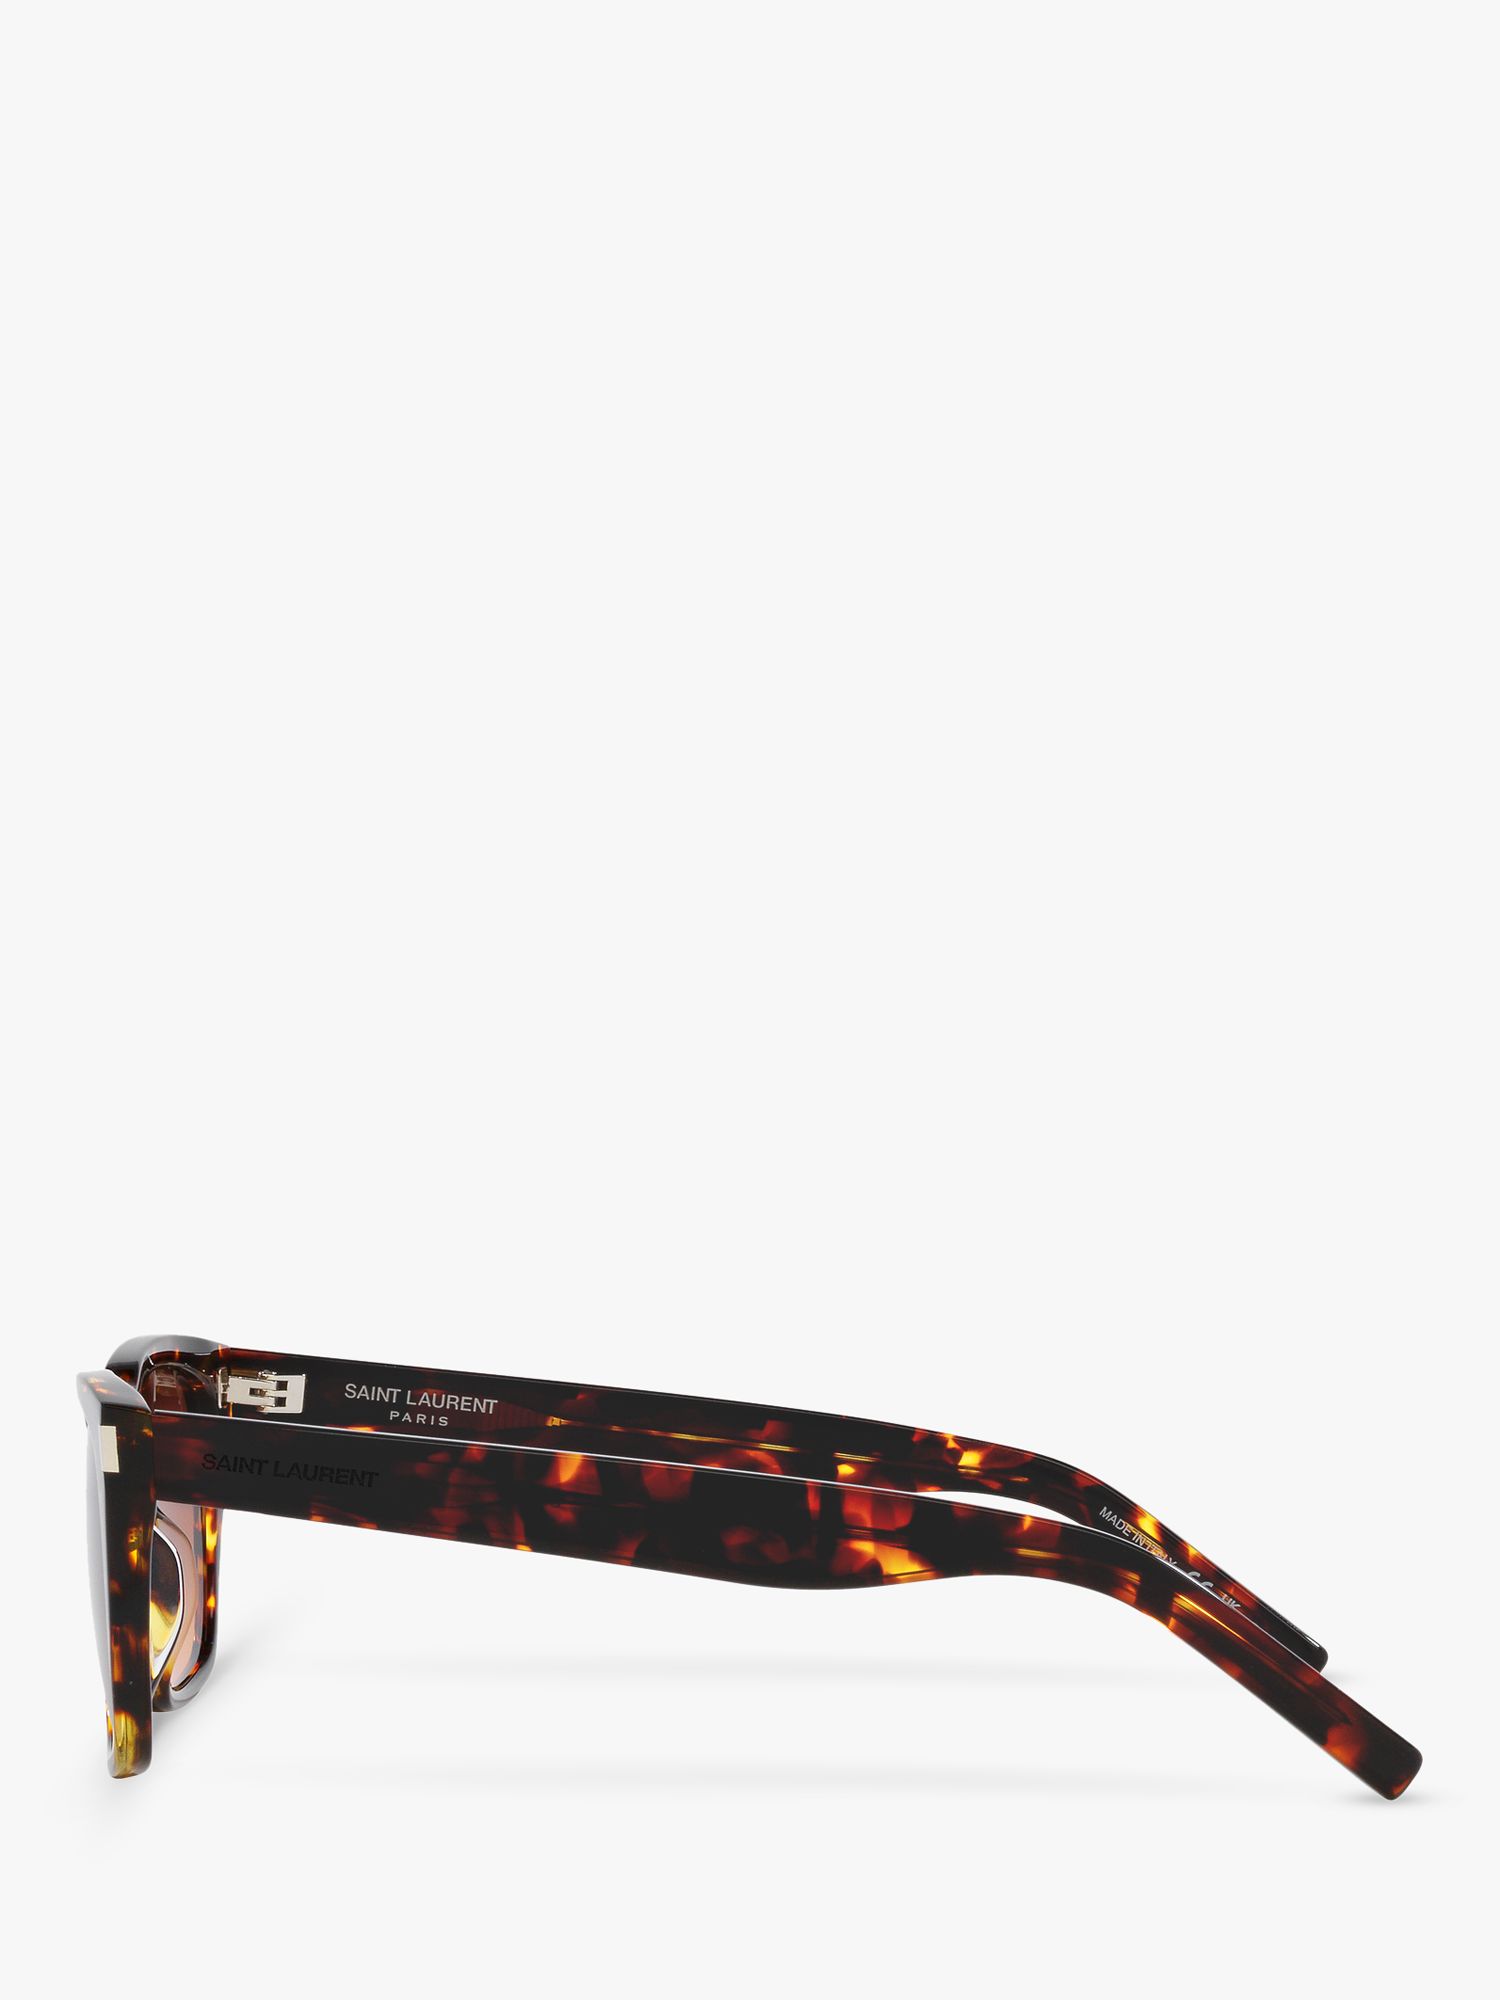 Yves Saint Laurent YS000474 Men's Rectangular Sunglasses, Tortoise